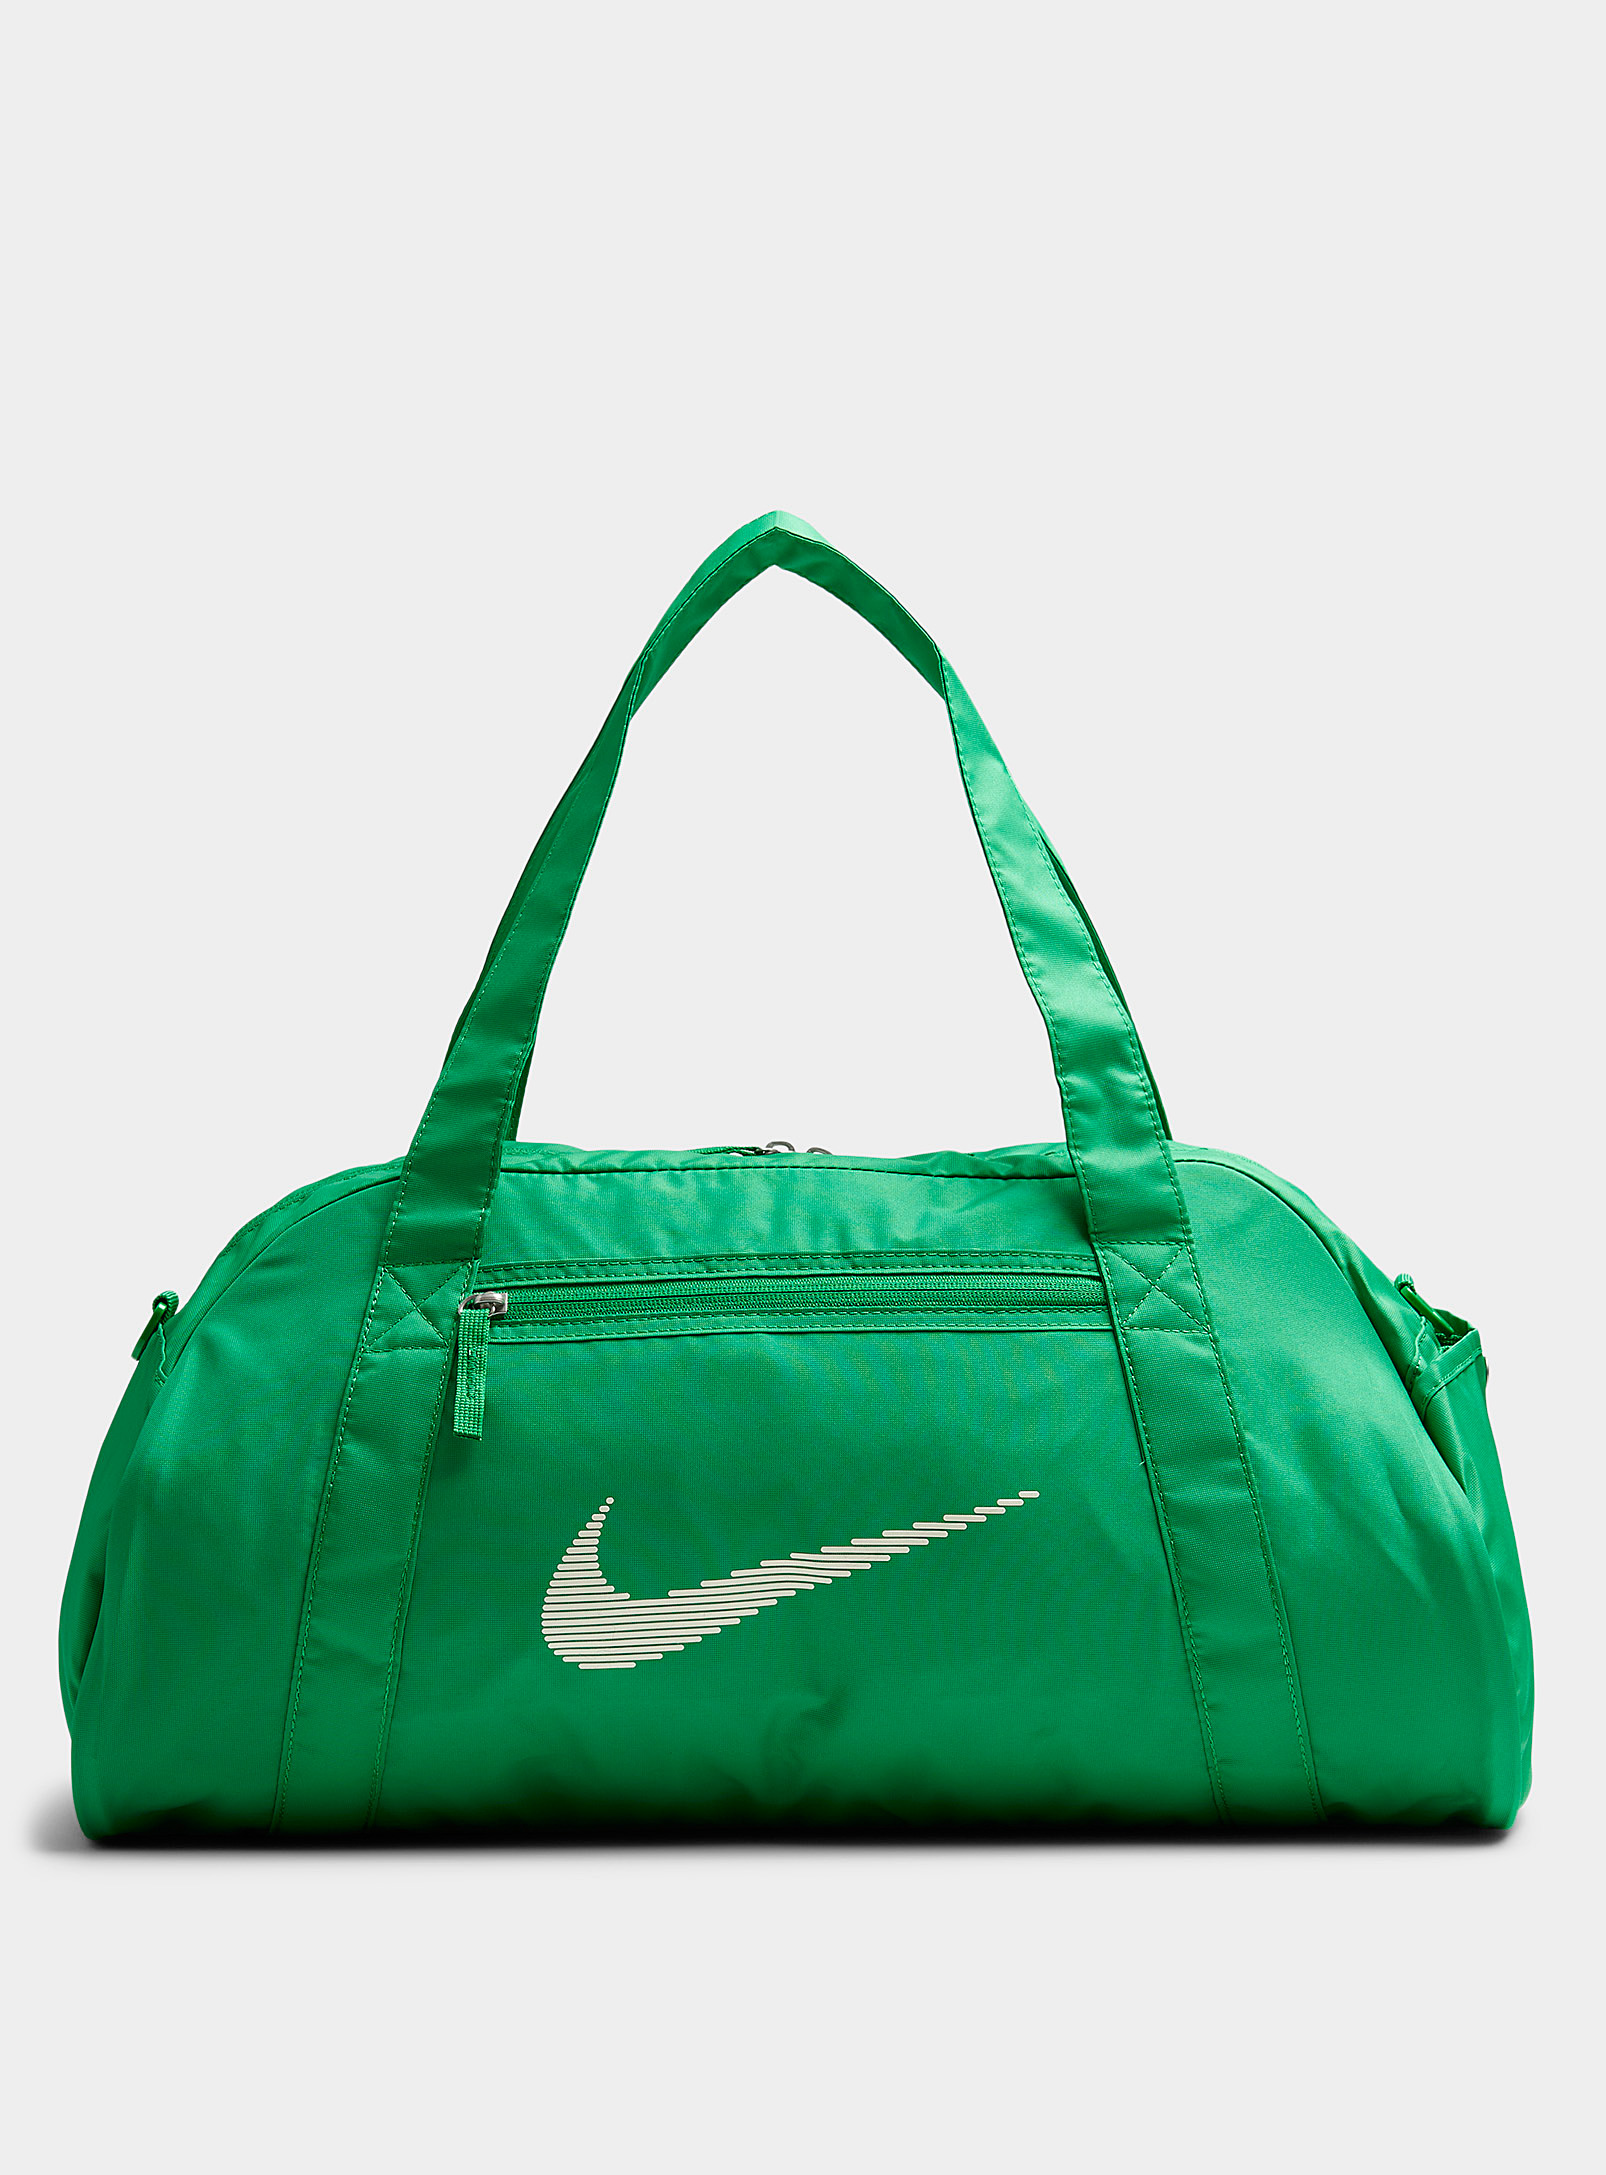 Nike - Men's Gym Club duffle bag